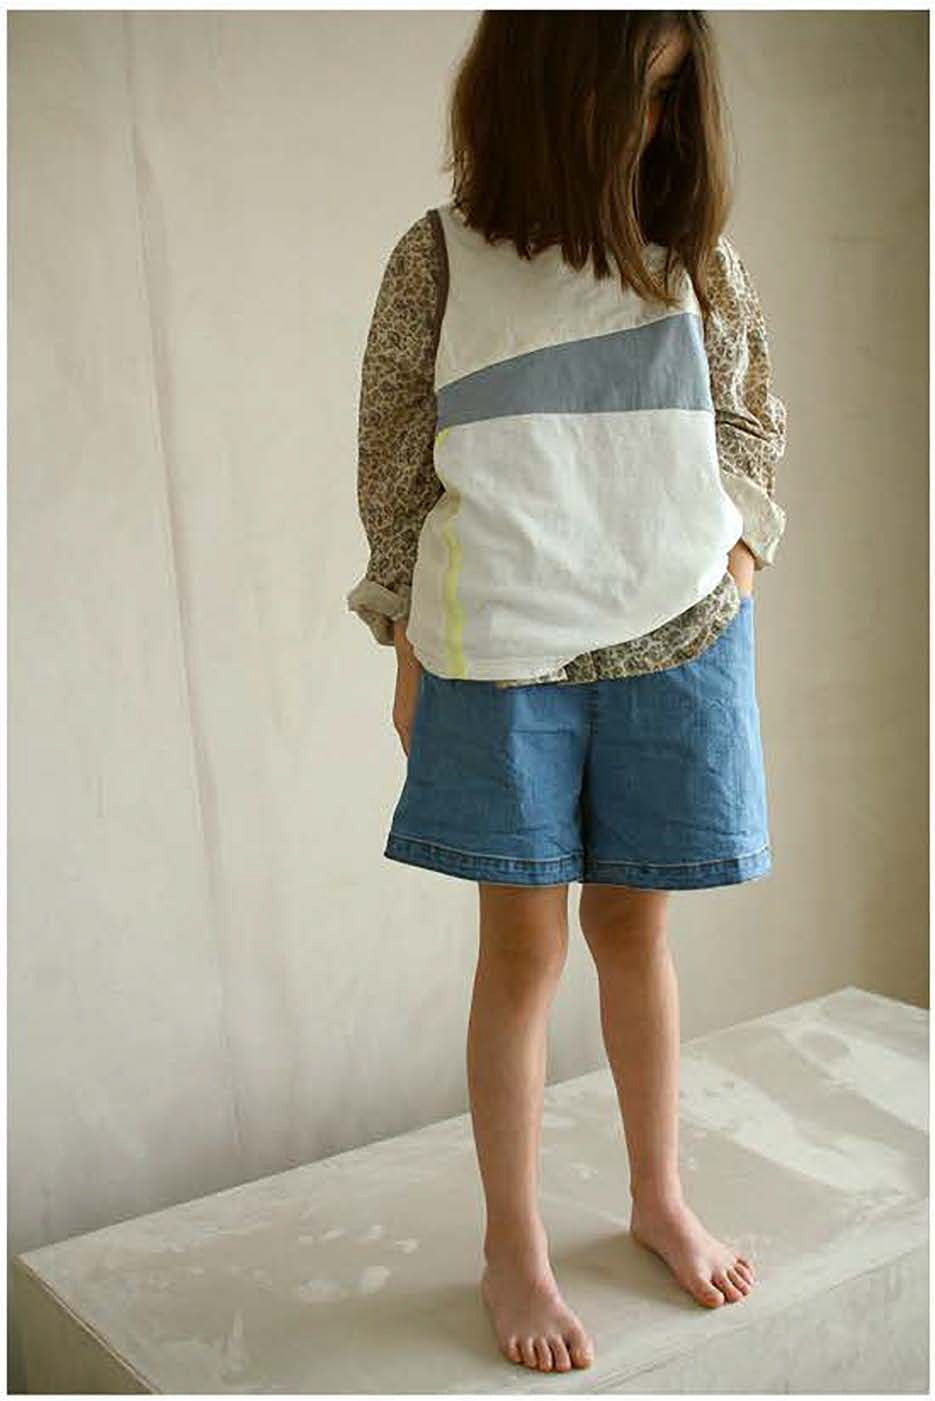 Tambere Becky Kid's Buttondown Shirt Beige Paisley Cotton | BIEN BIEN www.bienbienshop.com